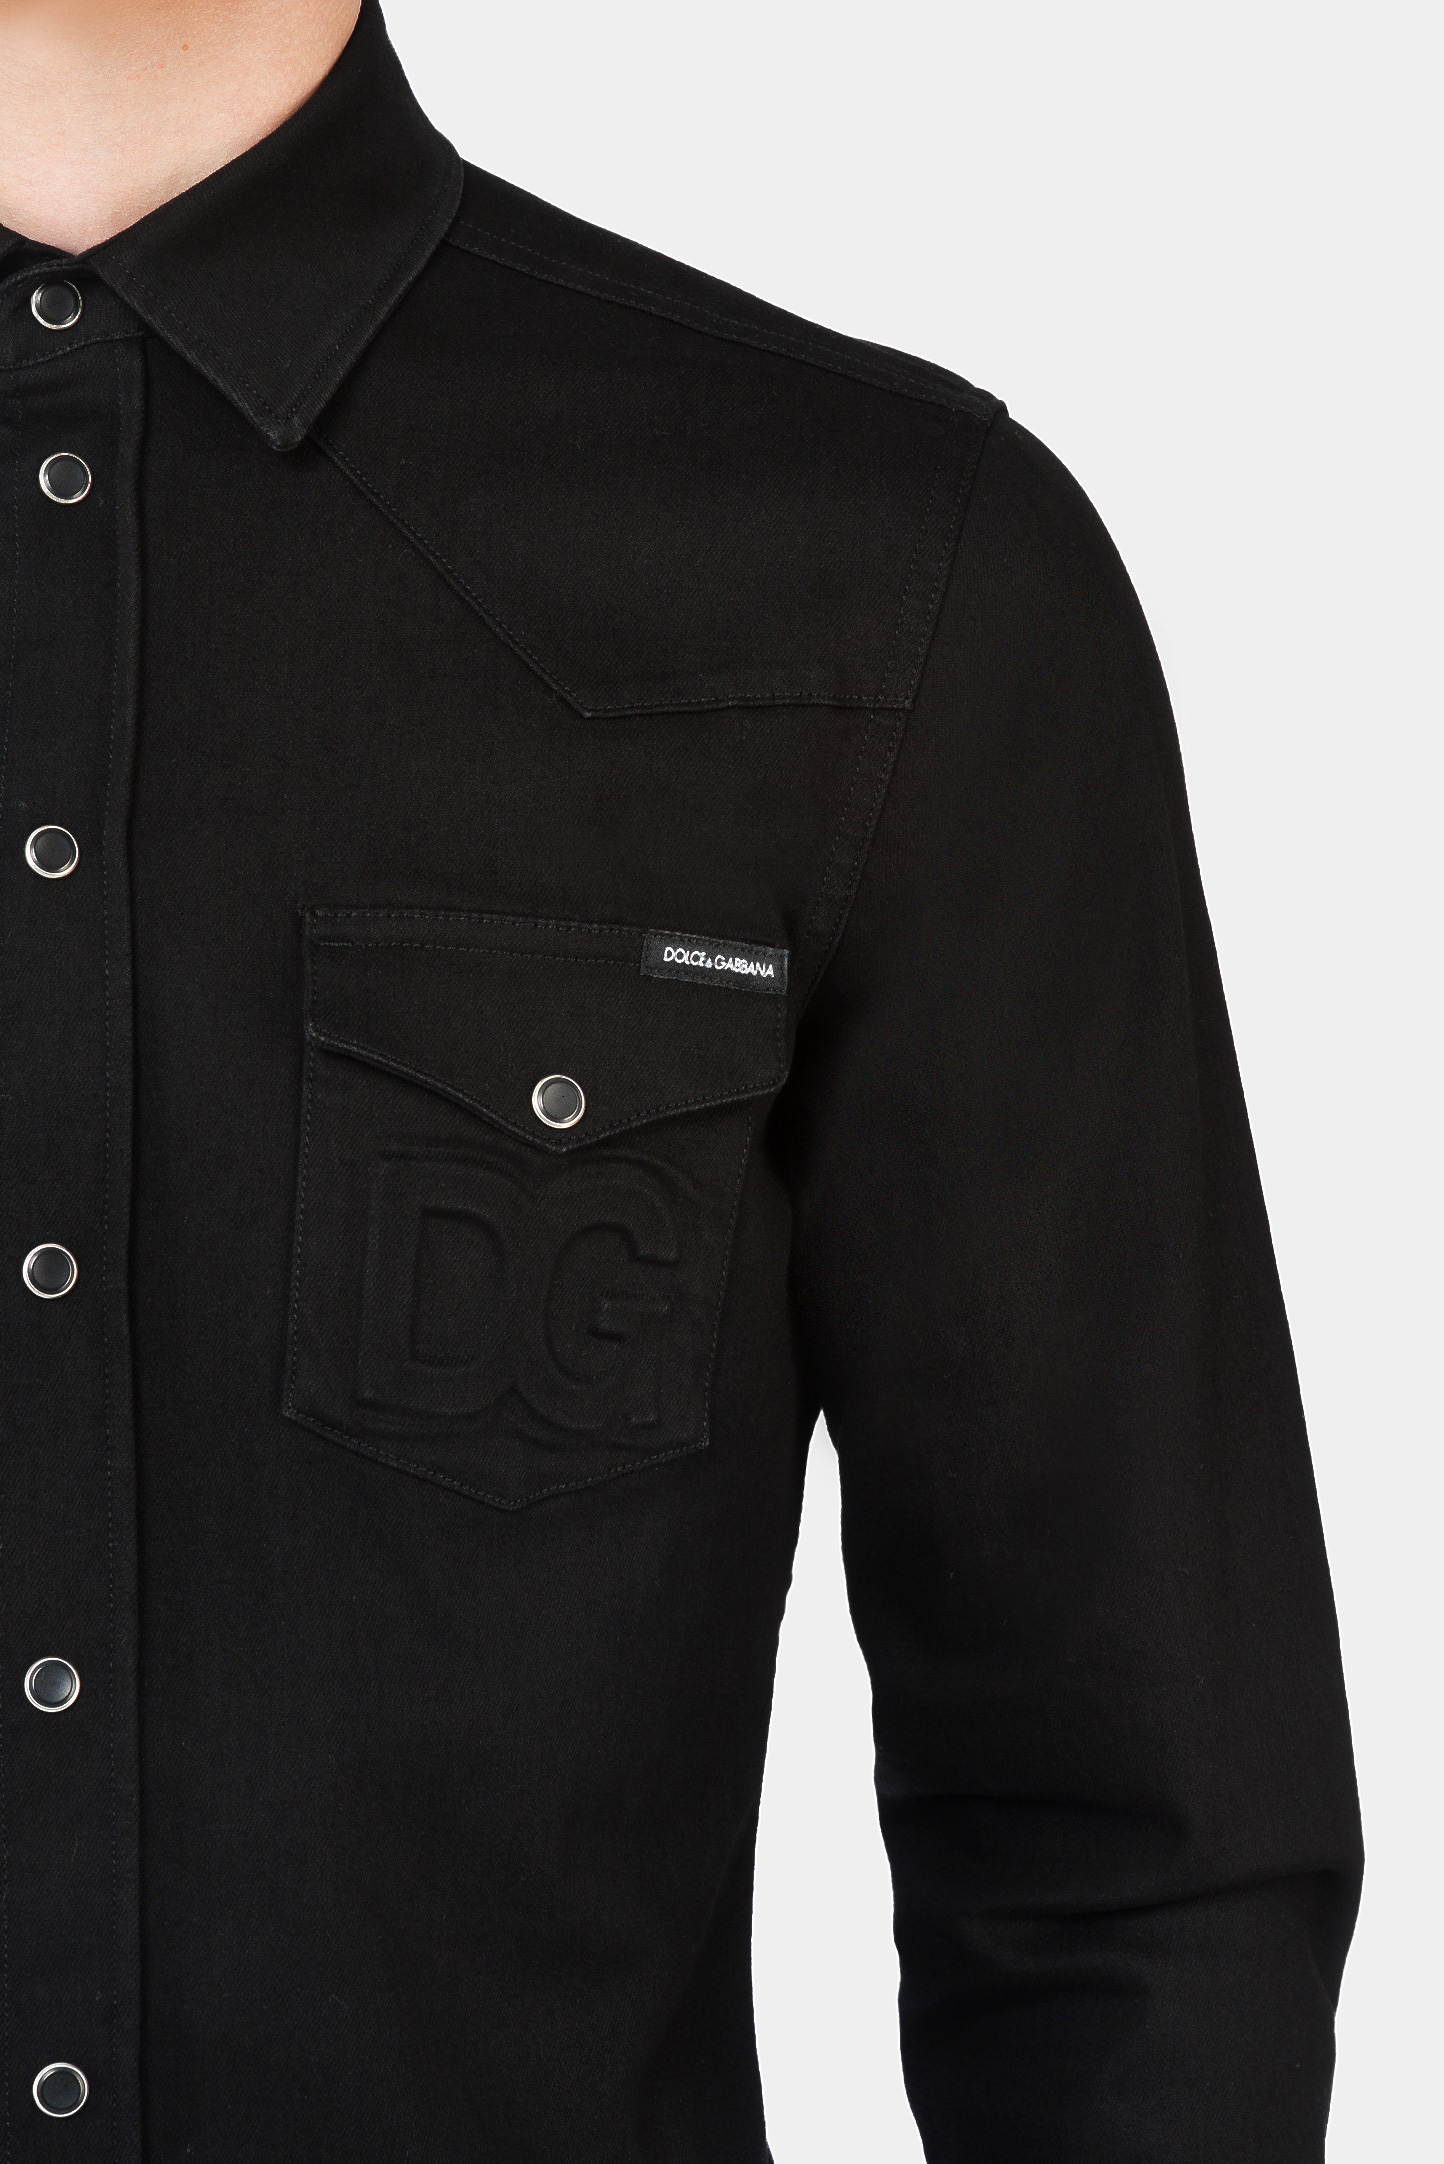 Рубашка DOLCE & GABBANA G5EX7Z G8DK3, цвет: Черный, Мужской